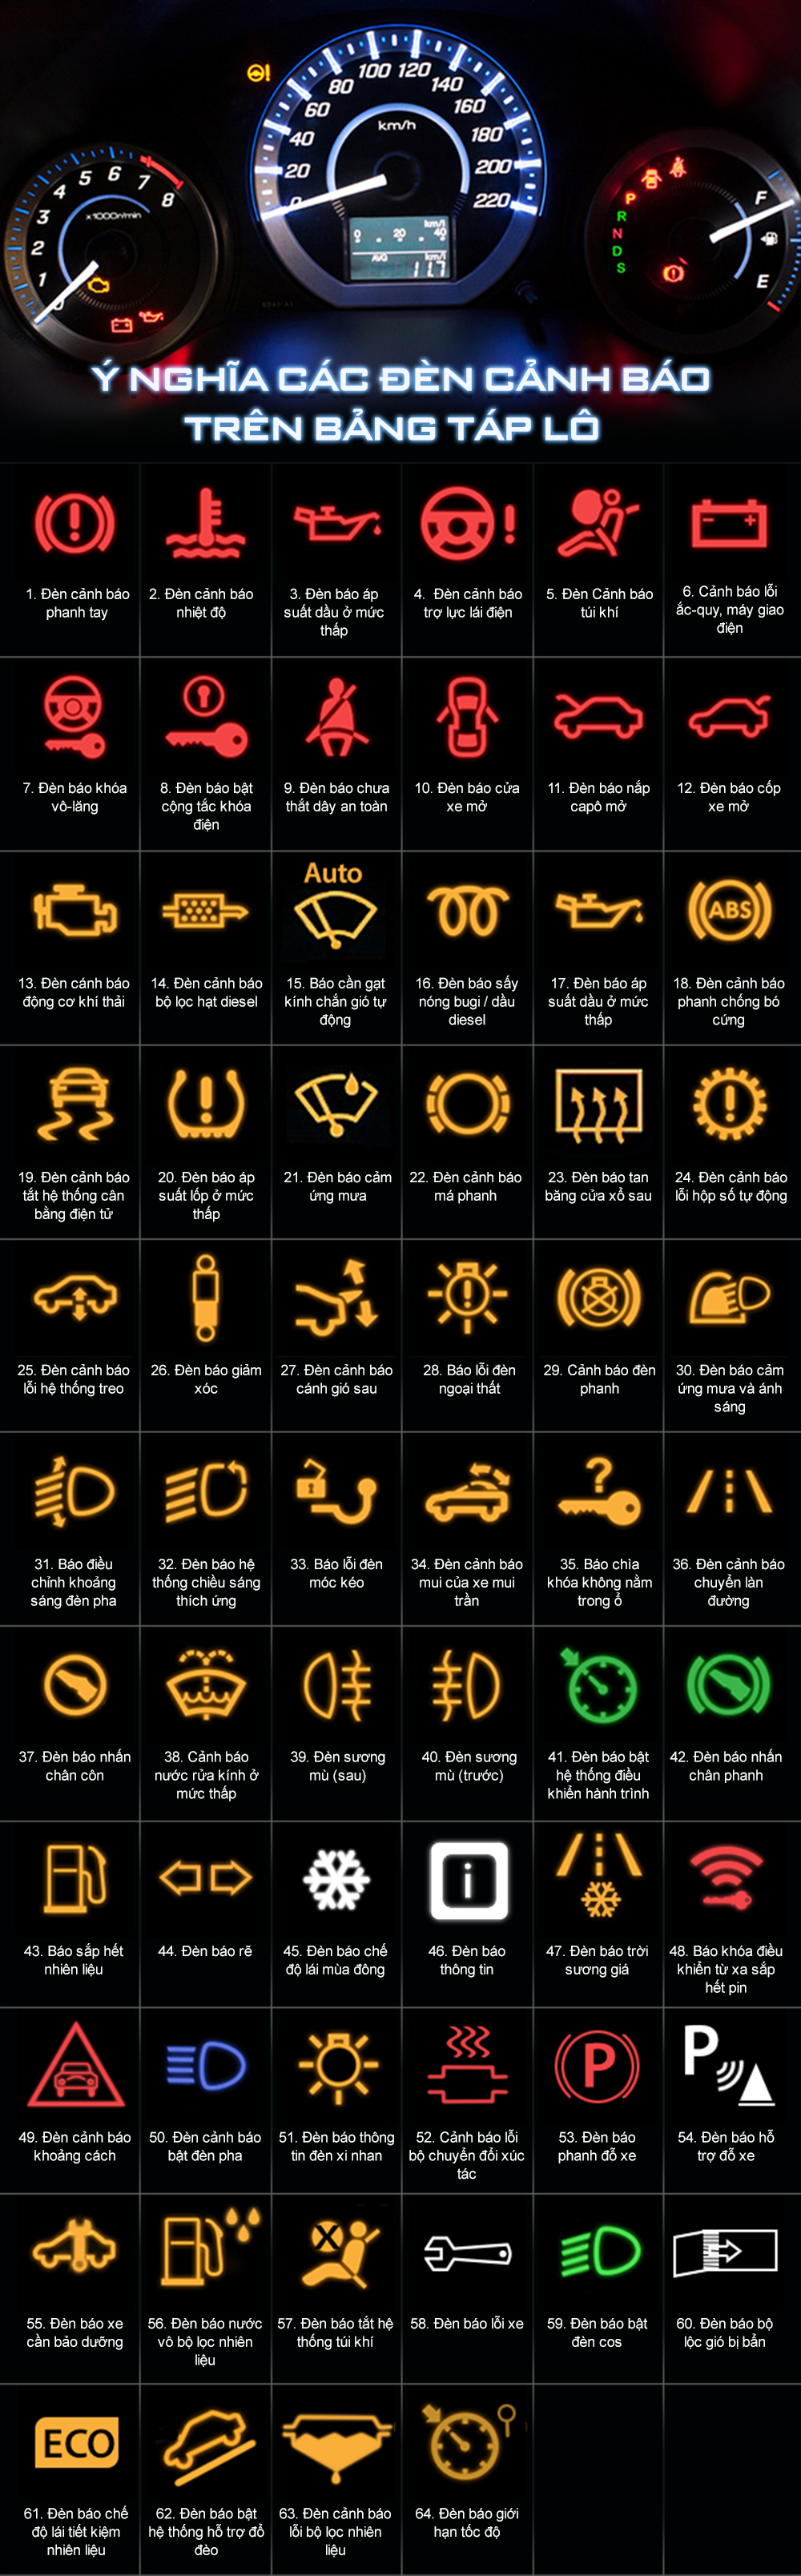 Ý nghĩa các đèn cảnh báo trên xe ô tô